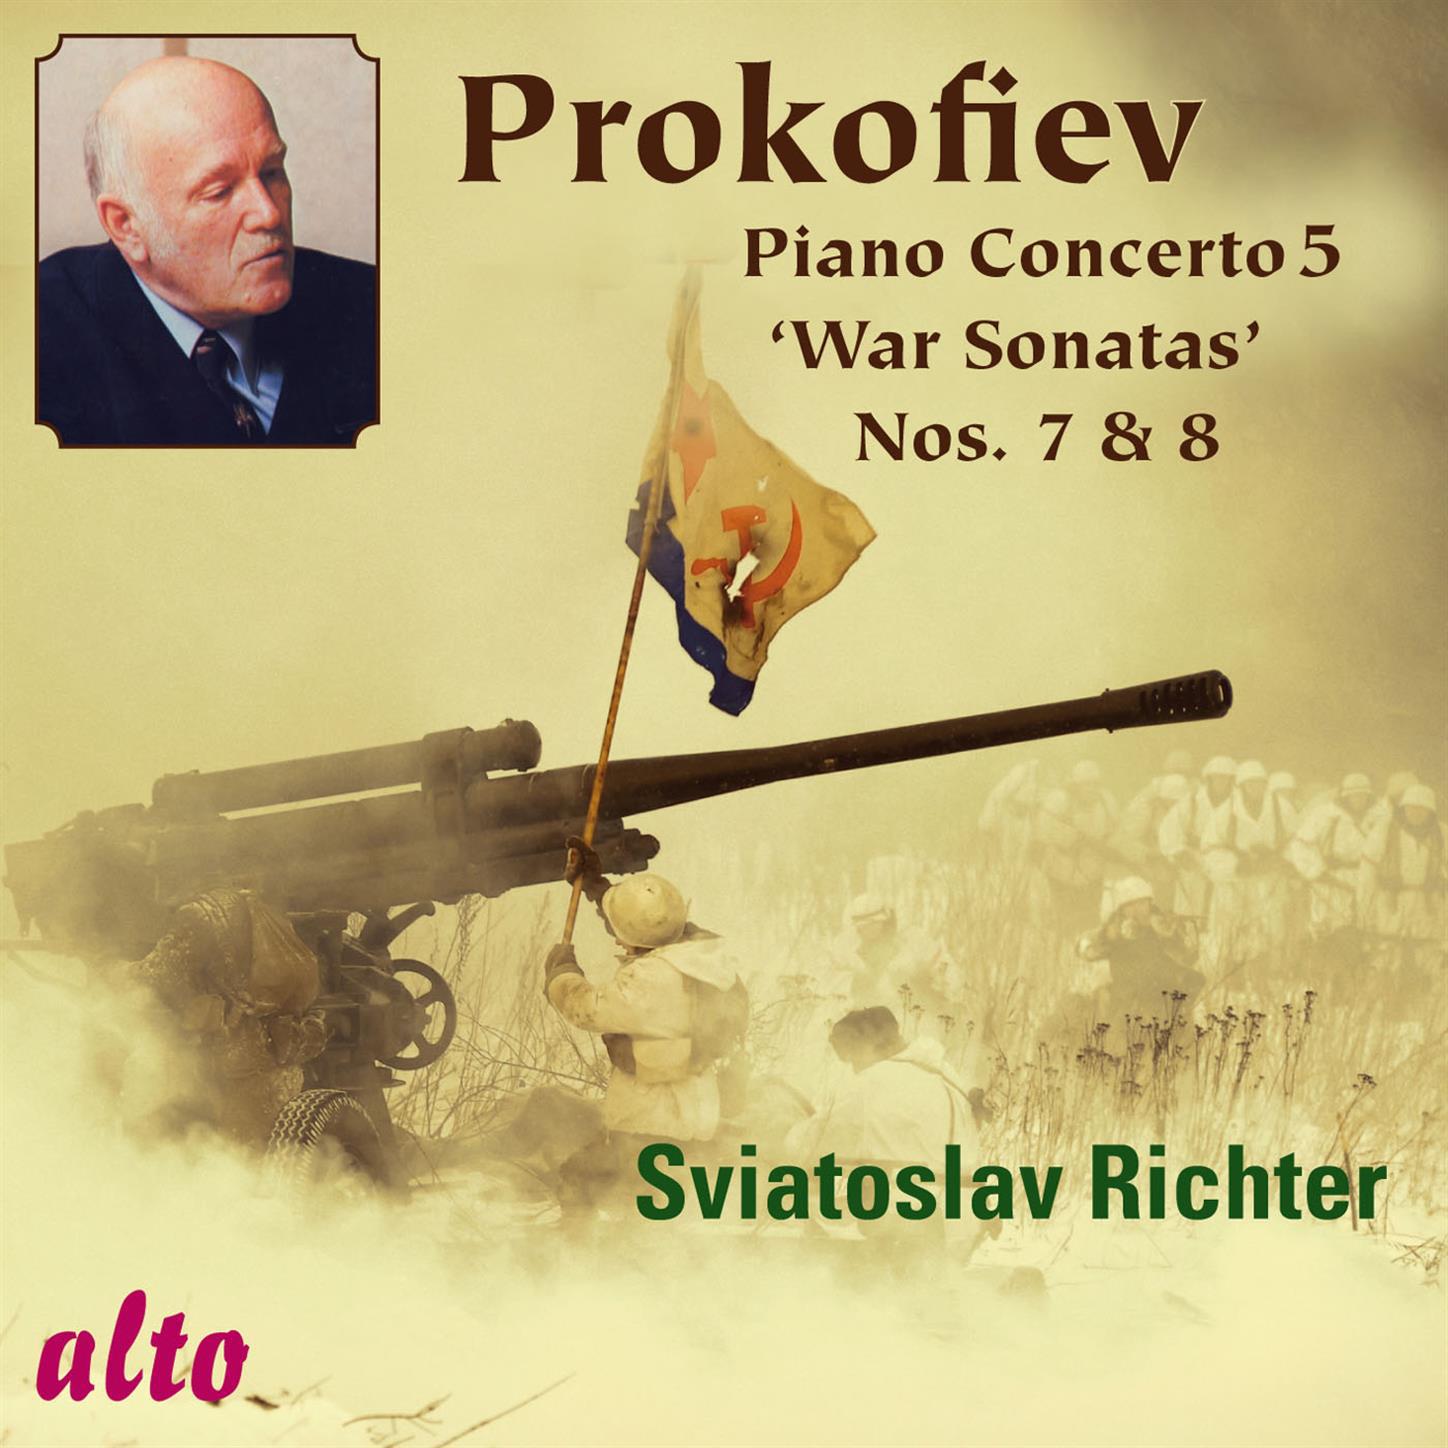 Piano Concerto No. 5 in G Major, Op. 55: I. Allegro con brio